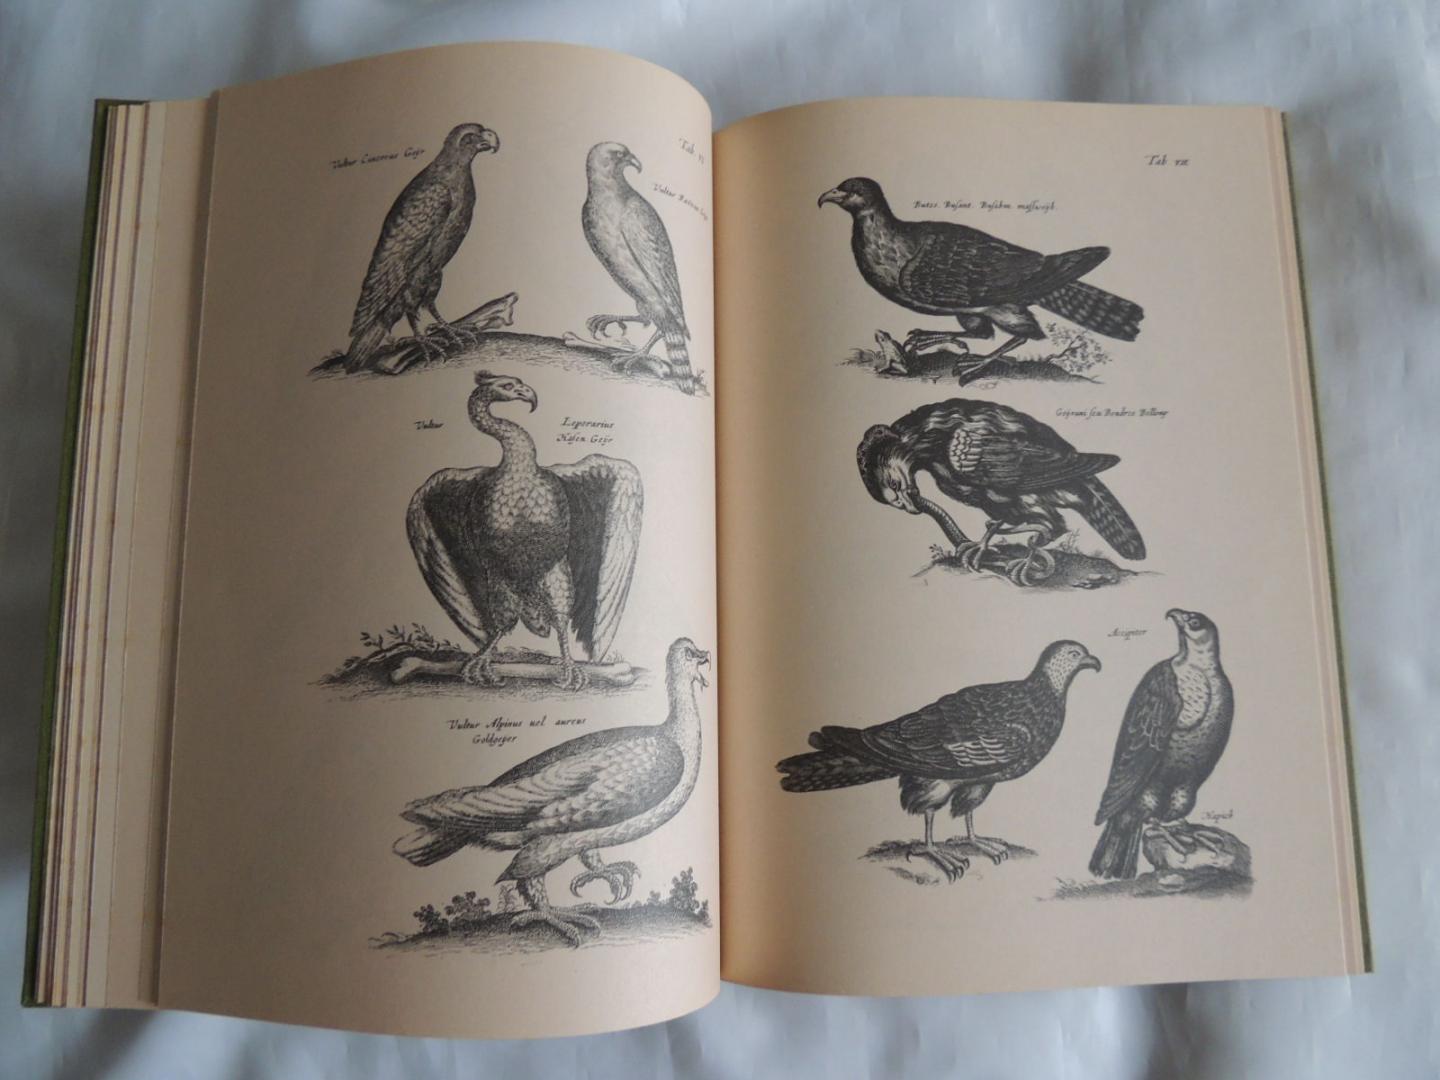 Matthias  Merian - Jonstons J - 2859 afbeeldingen uit J. Jonston's naeukeurige beschrijvingh van de natuur : olifanten, kamelen, leeuwen, adelaars, struisvogels, papegaaien, rivier,- zee- en strandvissen, vliegen, wormen, slangen en draken